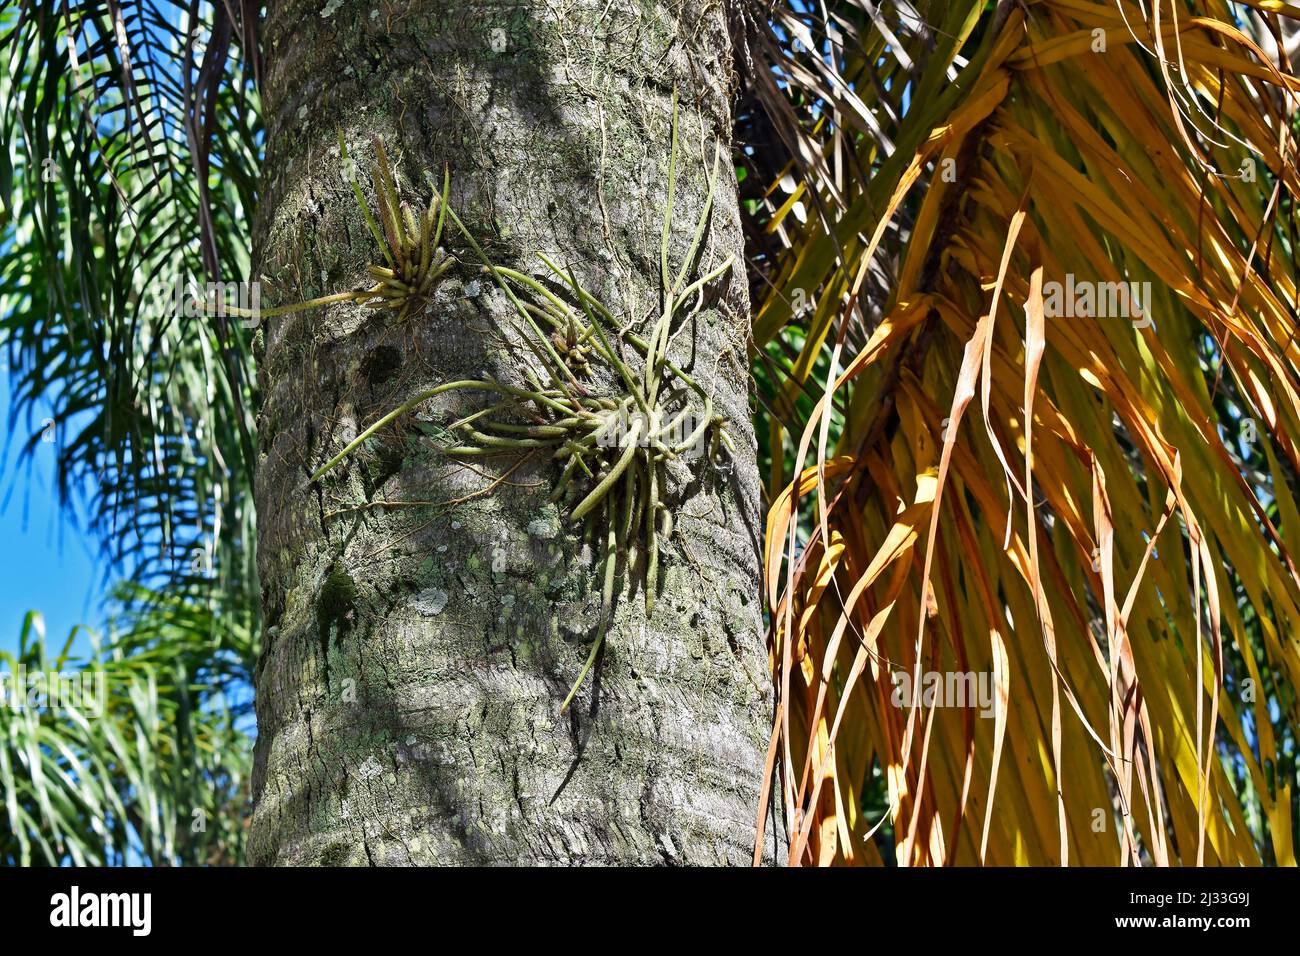 Epiphytic plant, Mistletoe cactus on palm tree trunk (Rhipsalis baccifera) Stock Photo